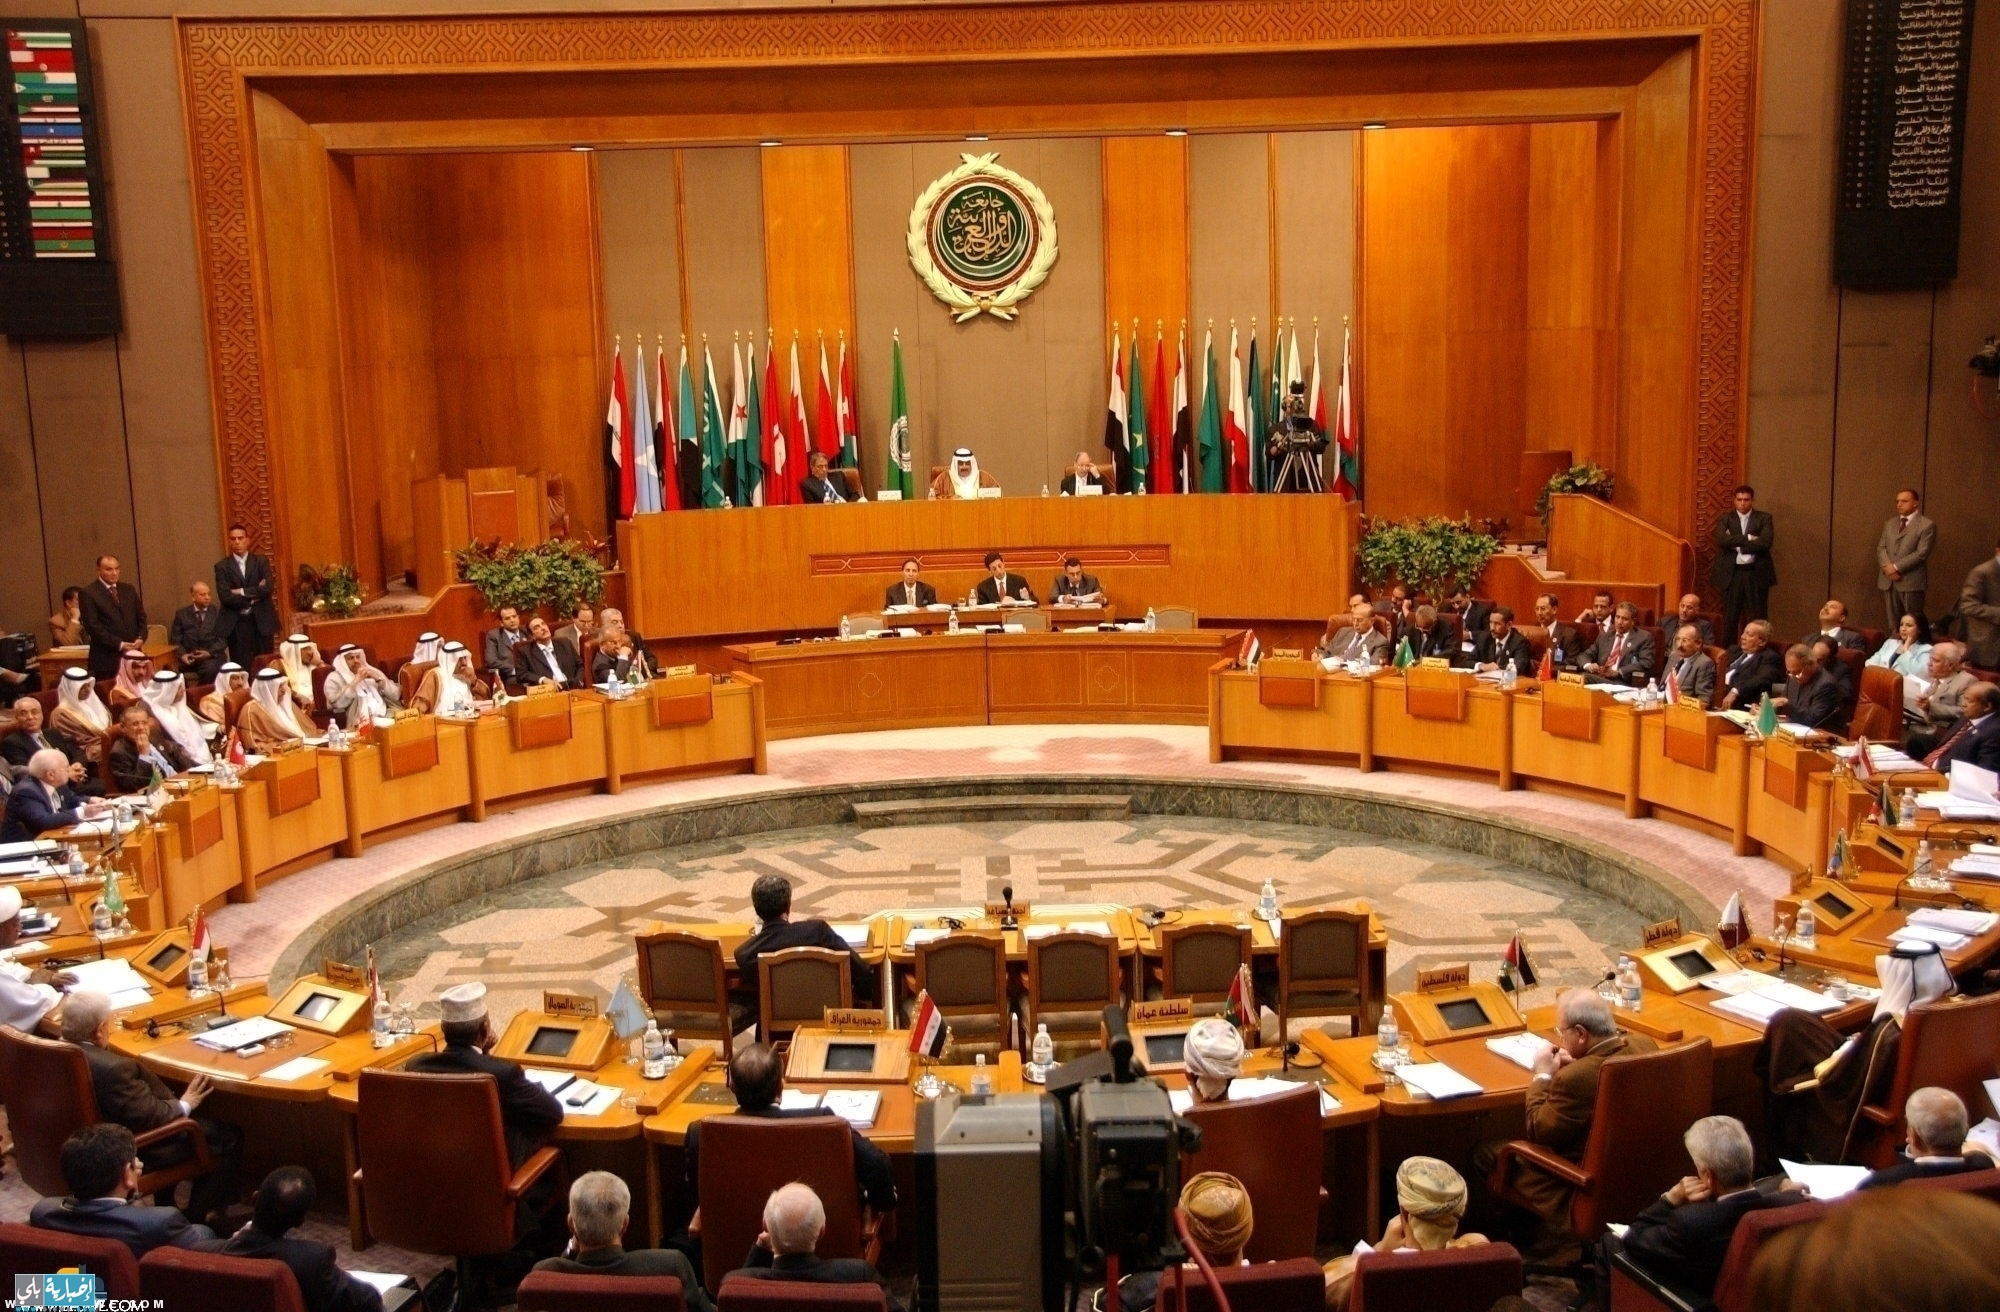 اجتماع بالجامعة العربية غدا يناقش التصدي لظاهرة إزدراء الأديان